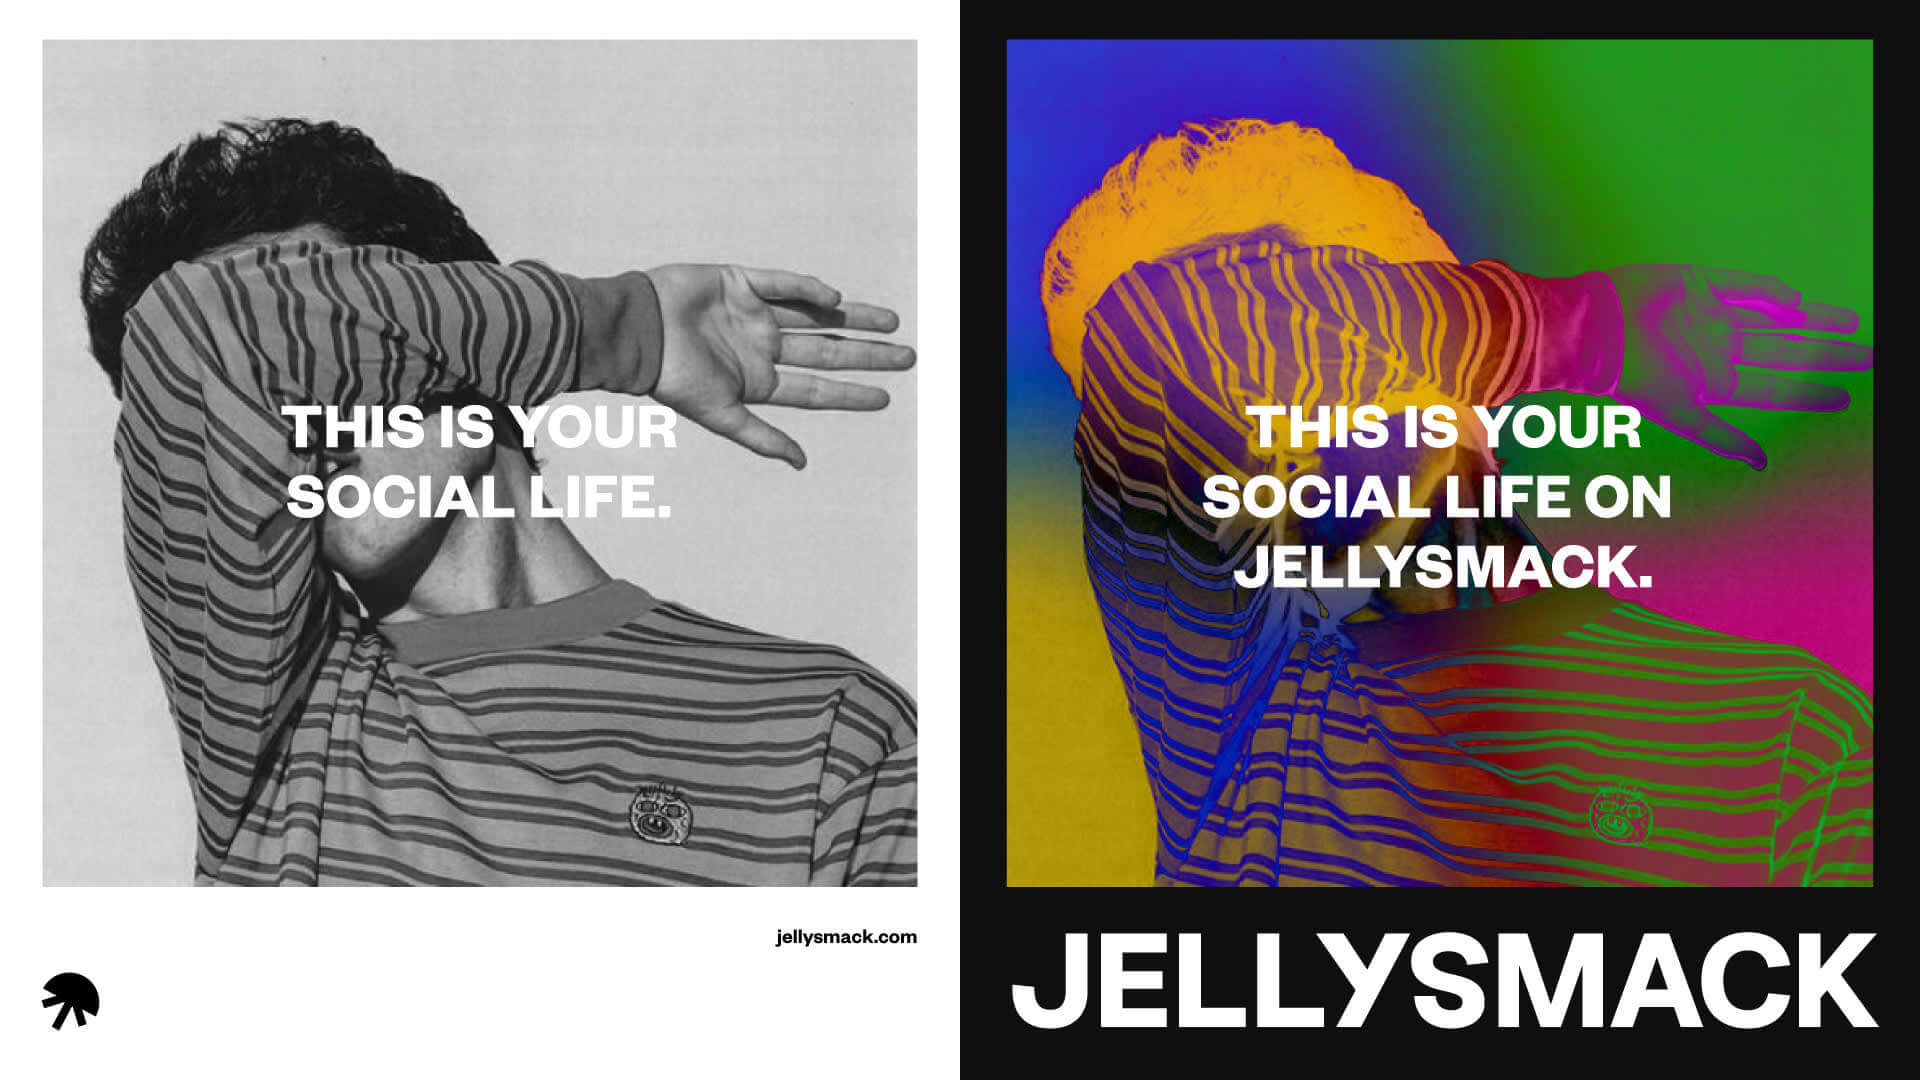 C'est votre vie sociale sur le poster de Jellysmack.